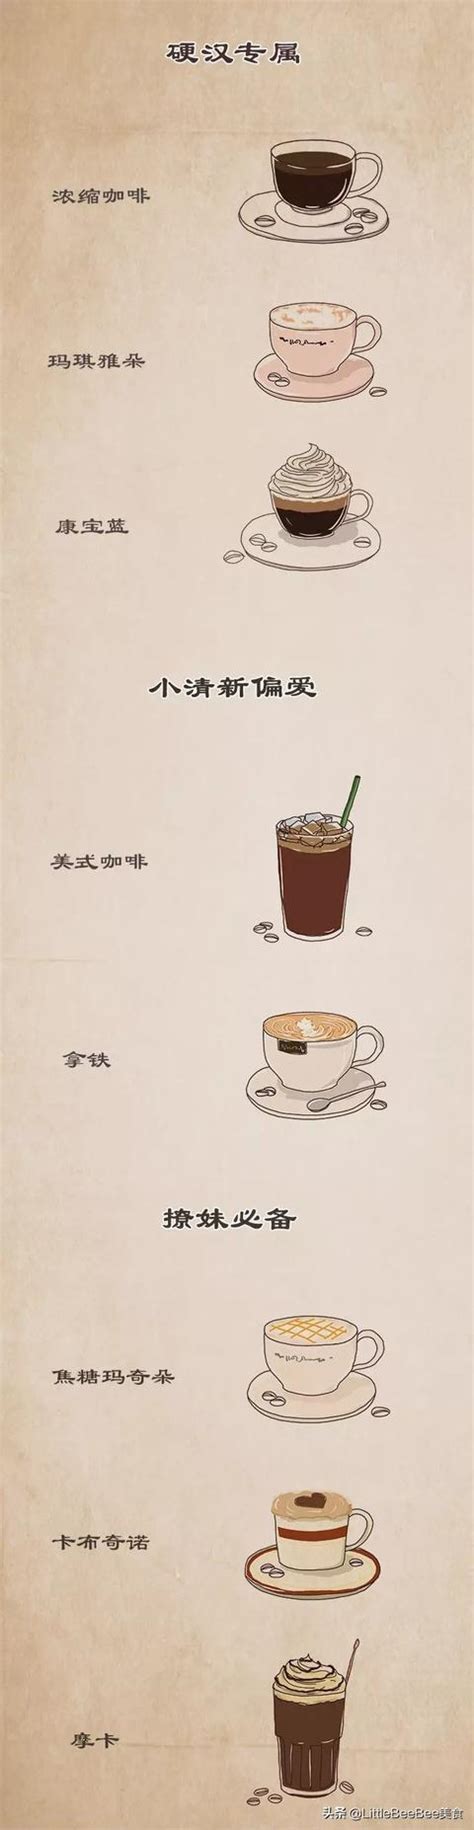 摩卡咖啡和拿铁咖啡有什么区别-百度经验